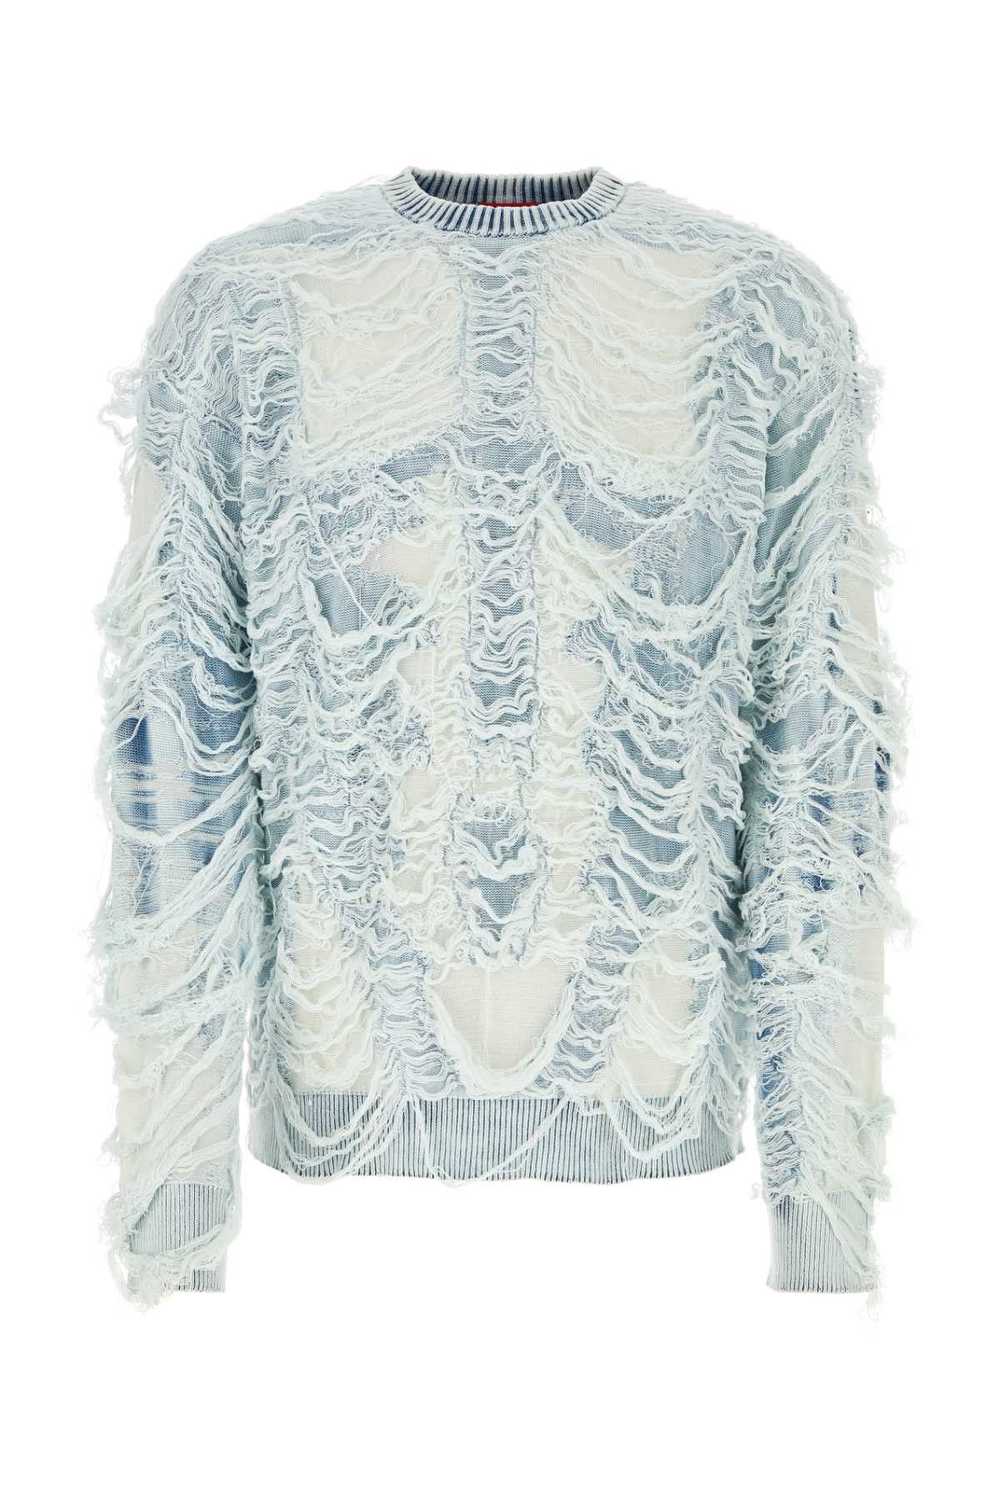 Diesel Embellished Cotton Blend K-Bacco Sweater - image 1